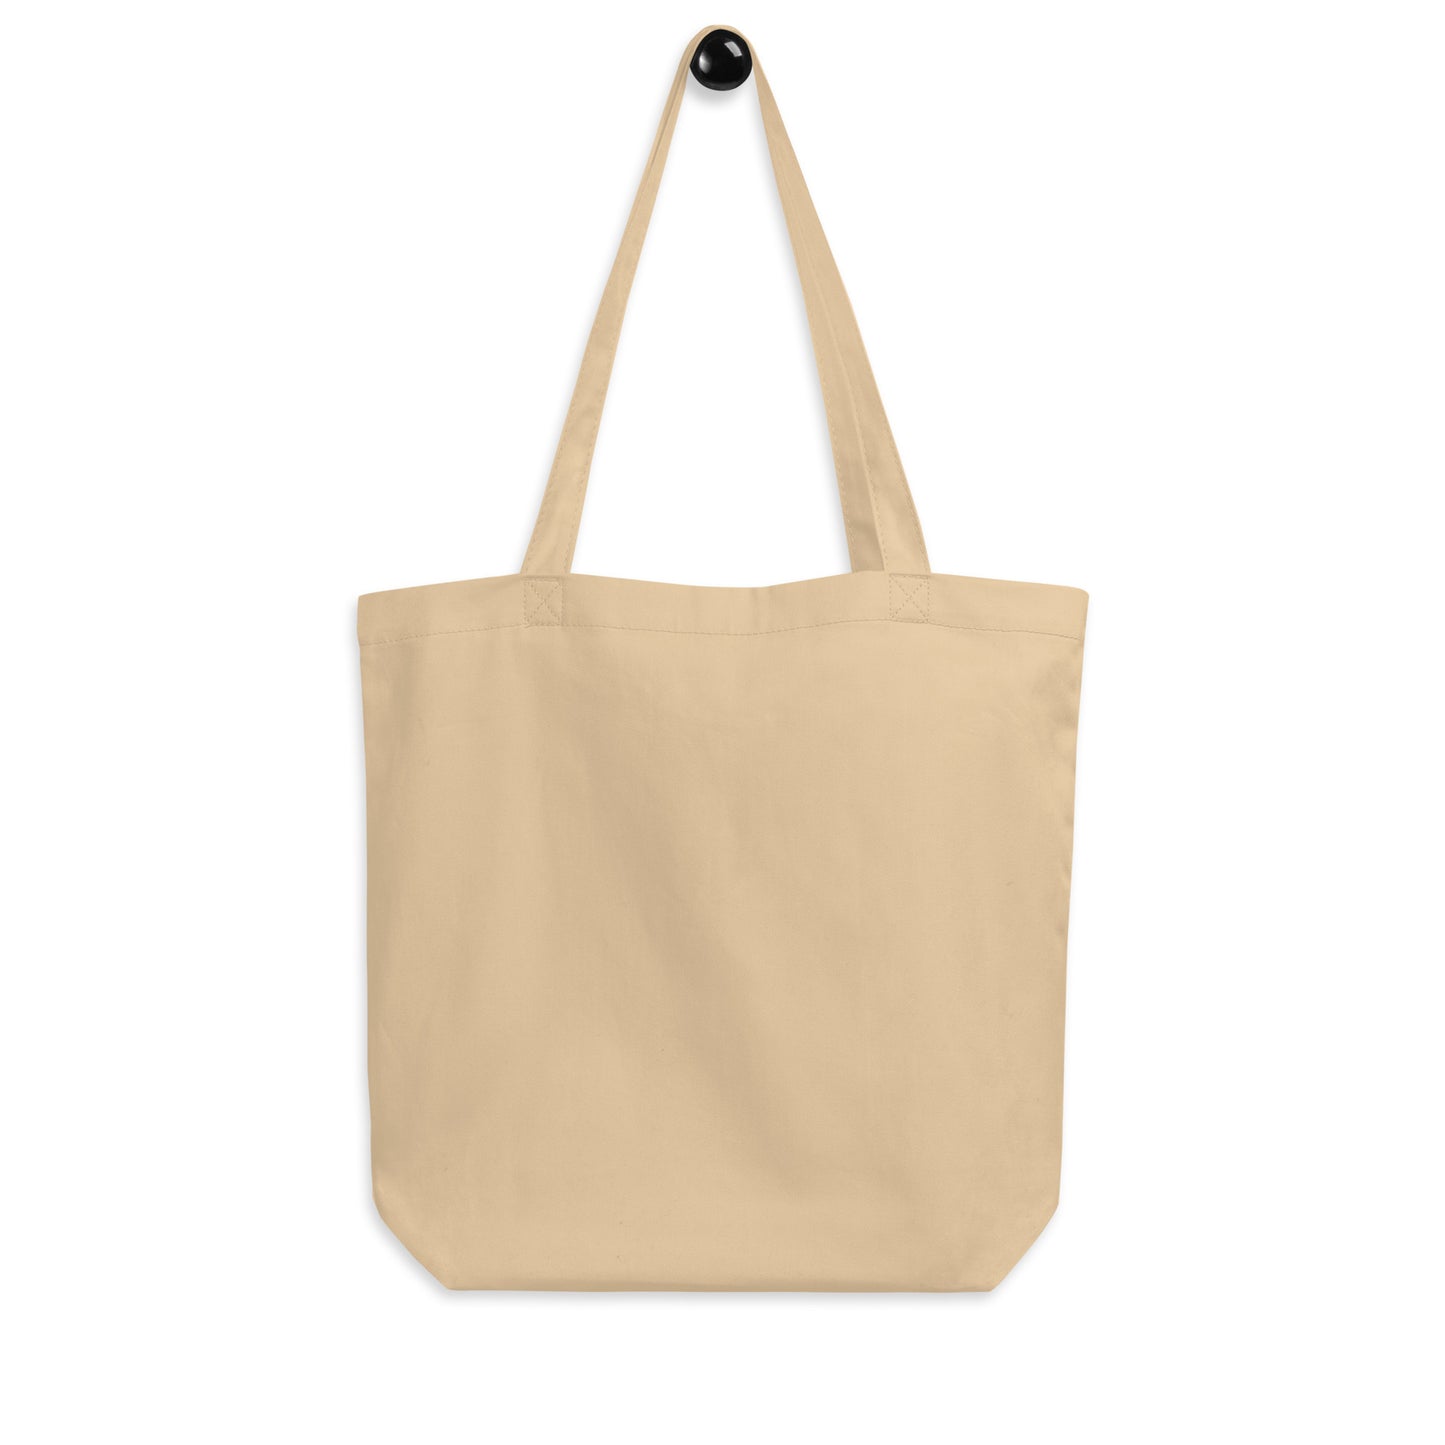 Cool Travel Gift Organic Tote Bag - Viking Blue • YQM Moncton • YHM Designs - Image 05